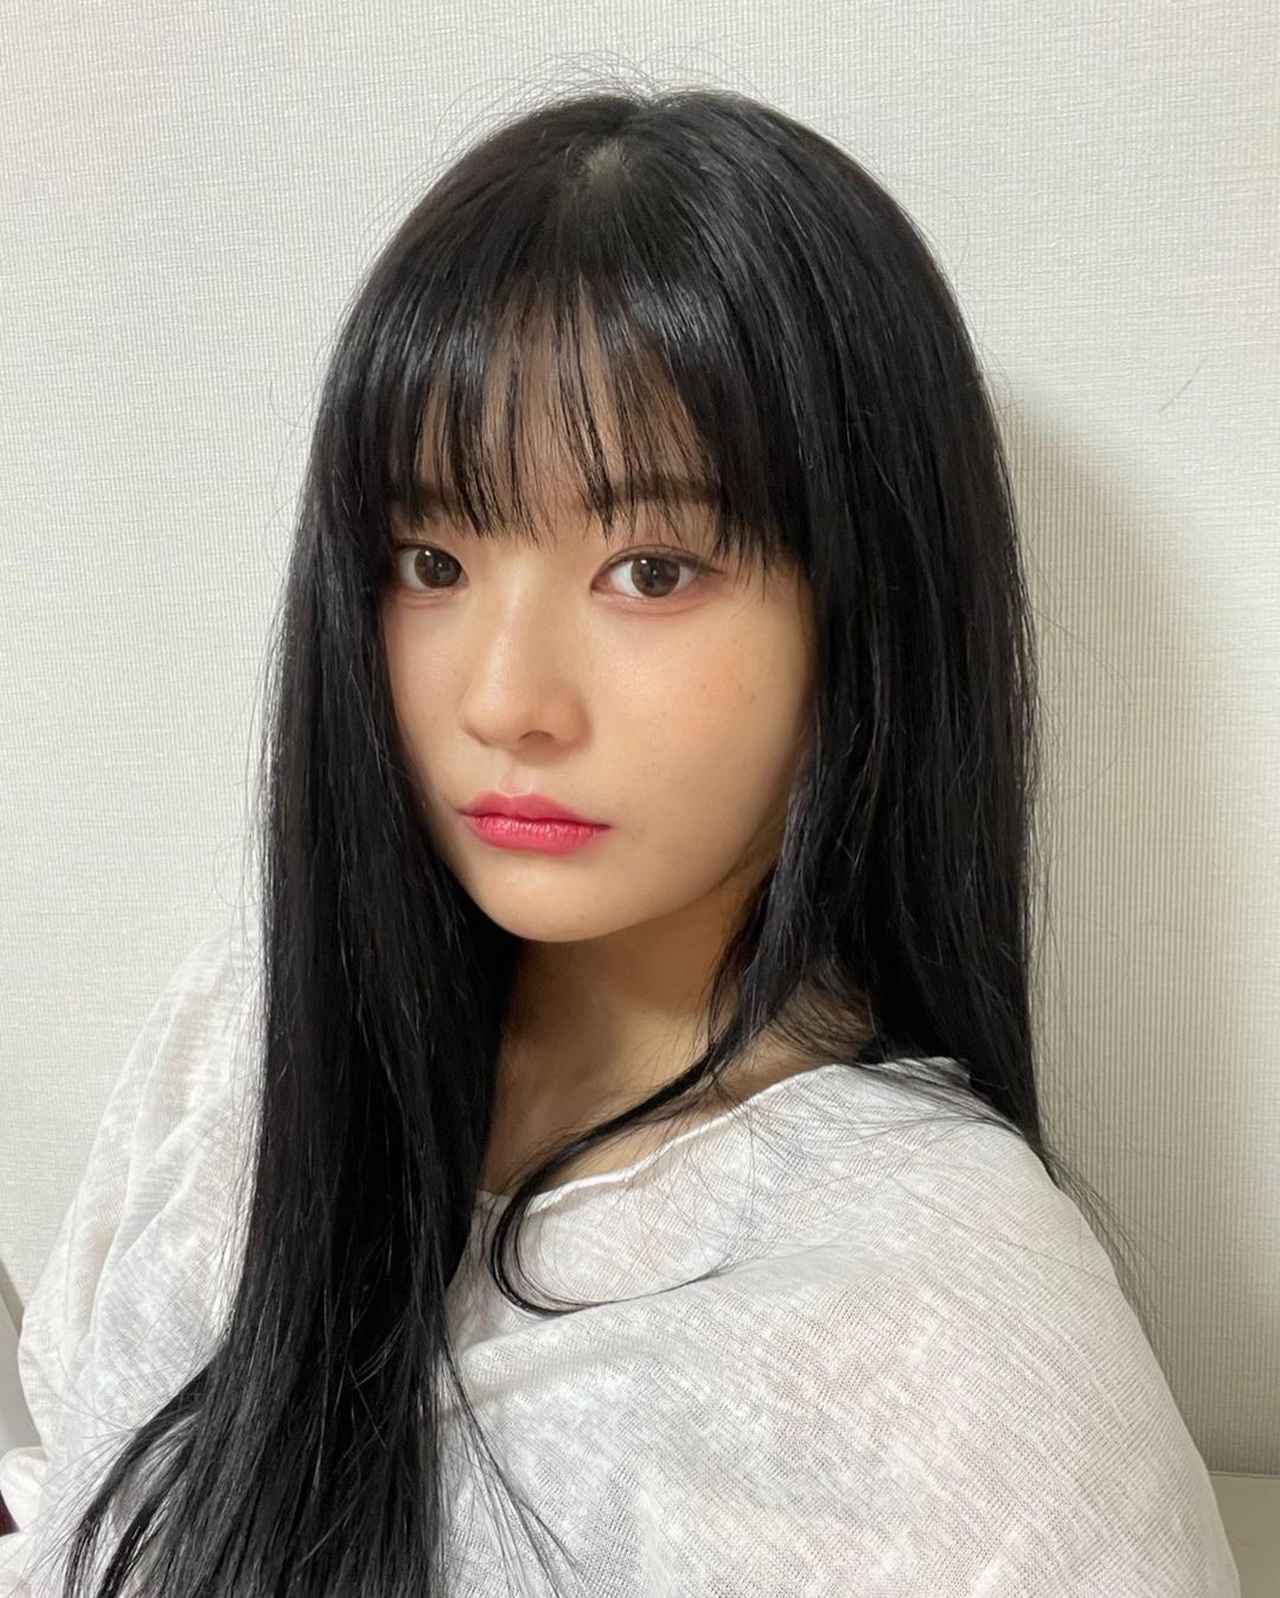 絶対真似したい ガルプラ 韓国人メンバー の 色っぽヘア ローリエプレス